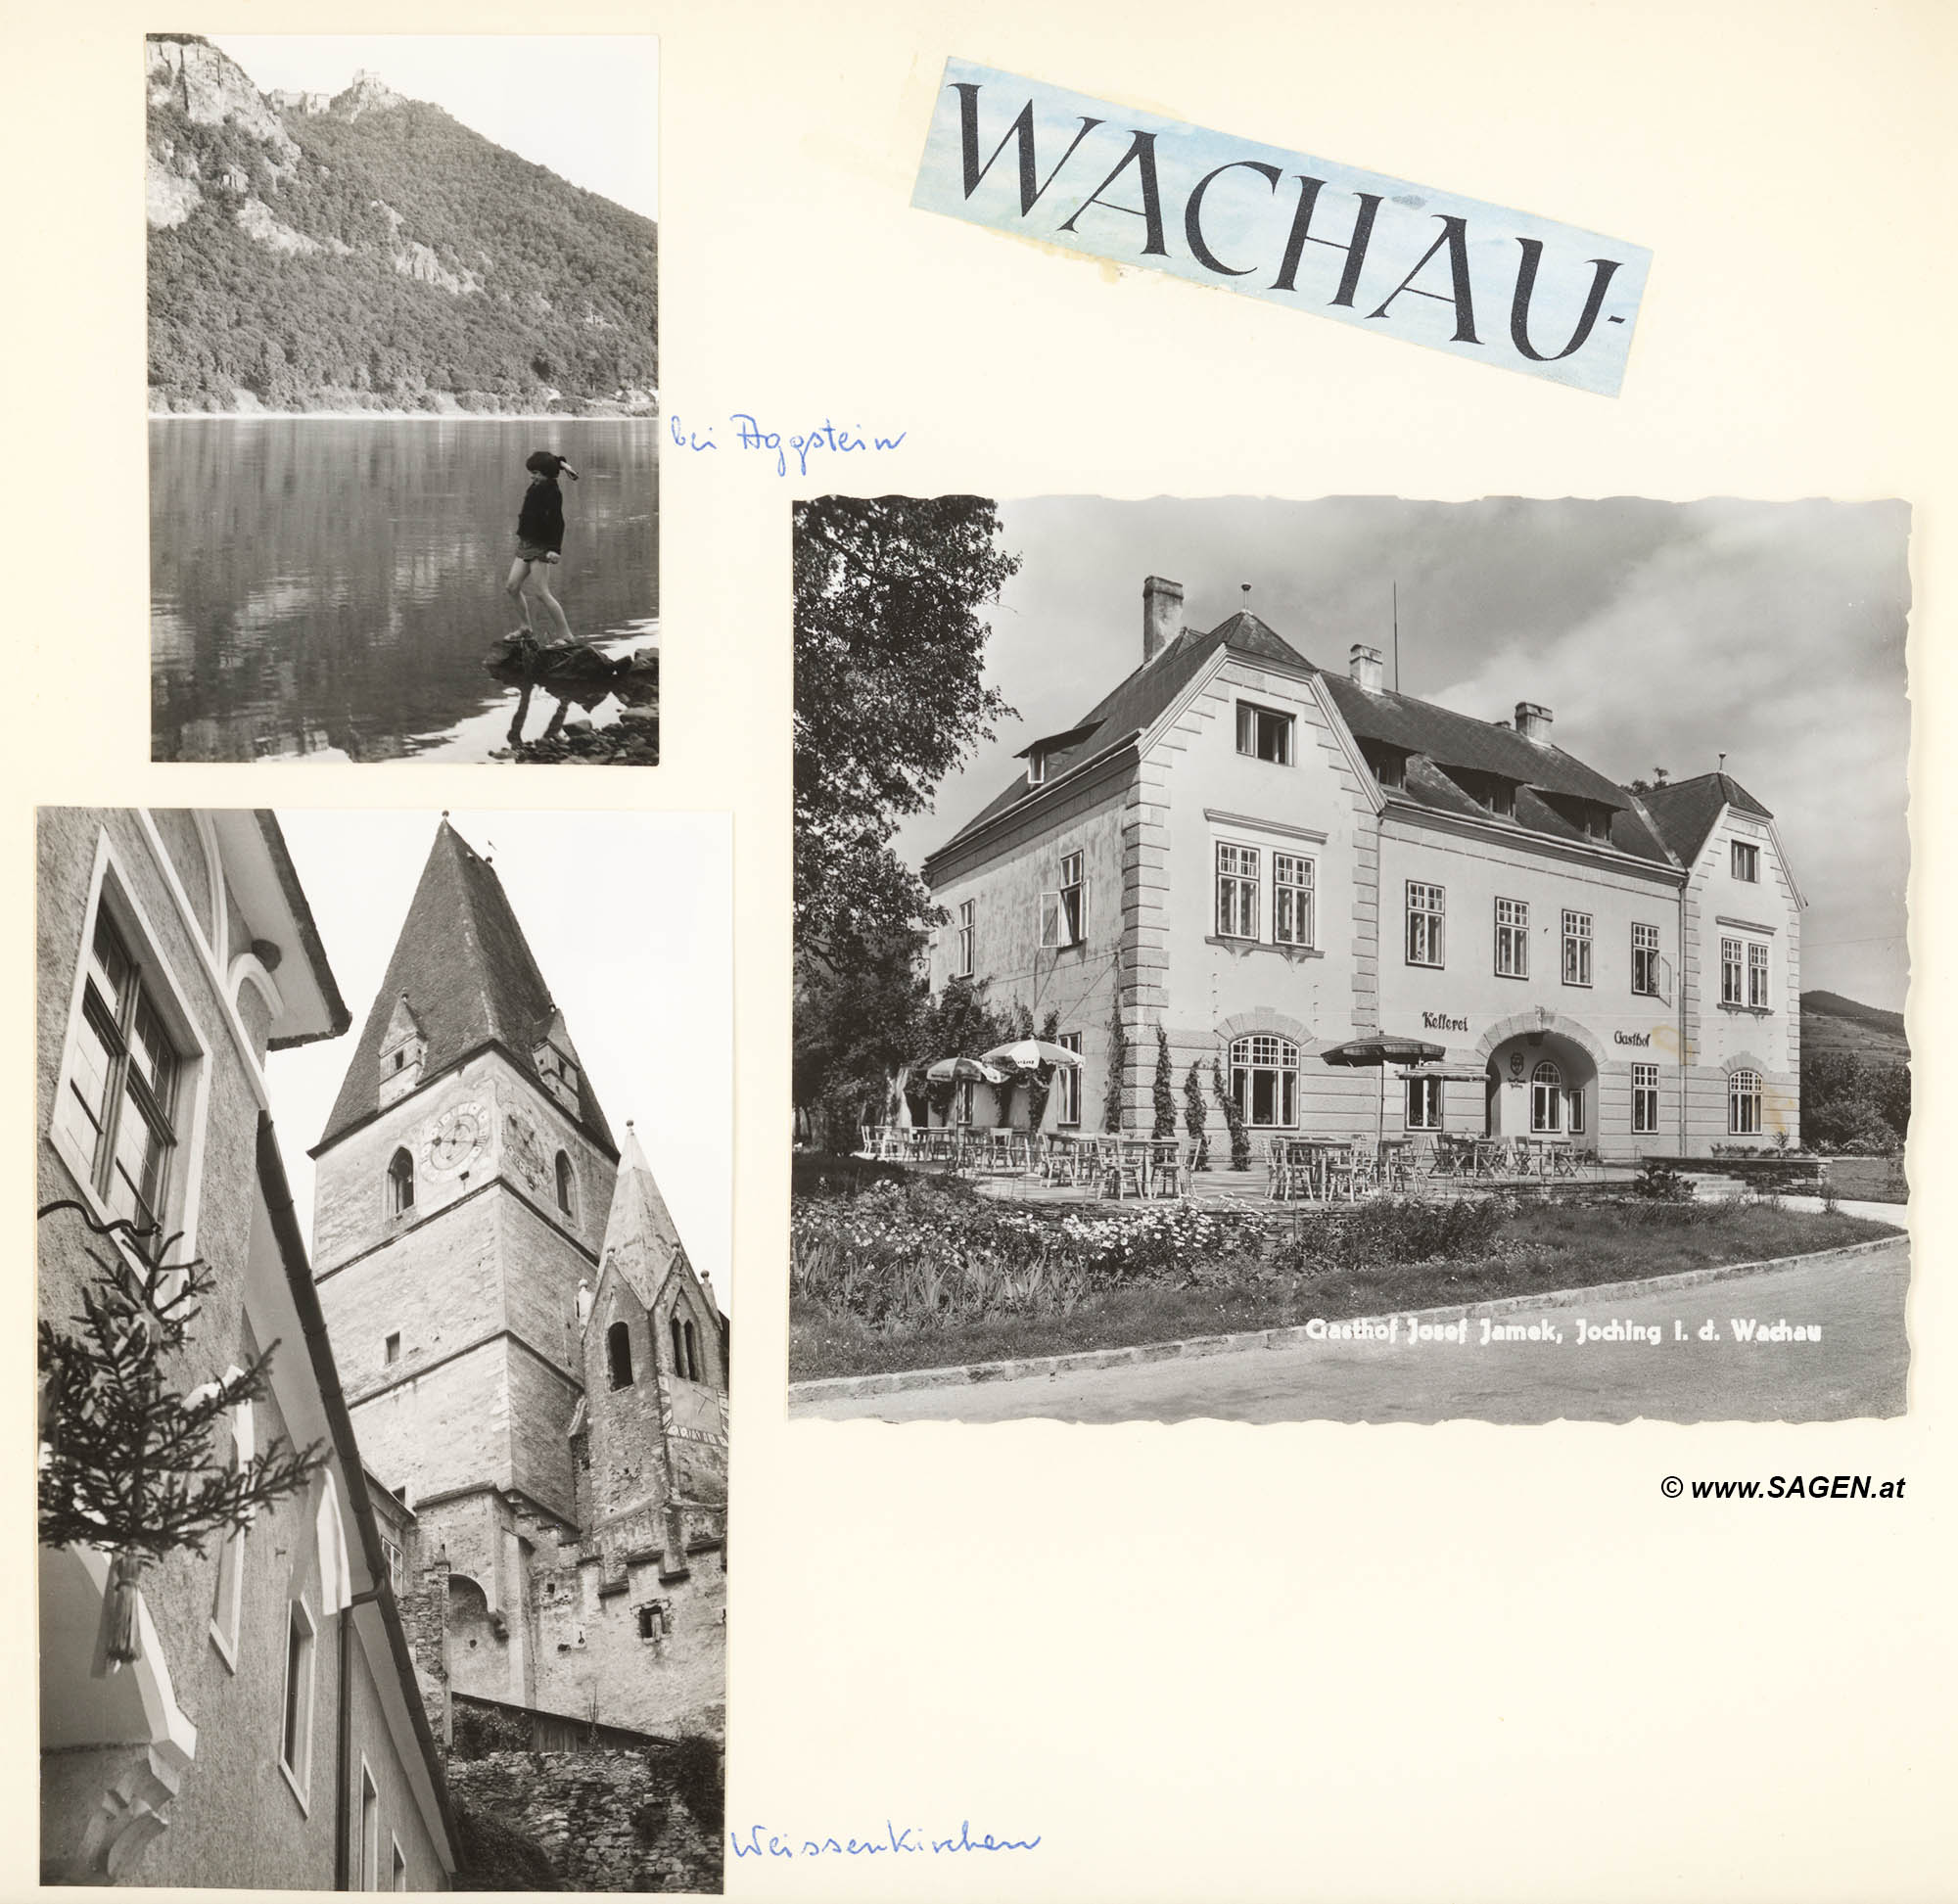 Wachau, Aggstein, Joching, Weissenkirchen Sommer 1958